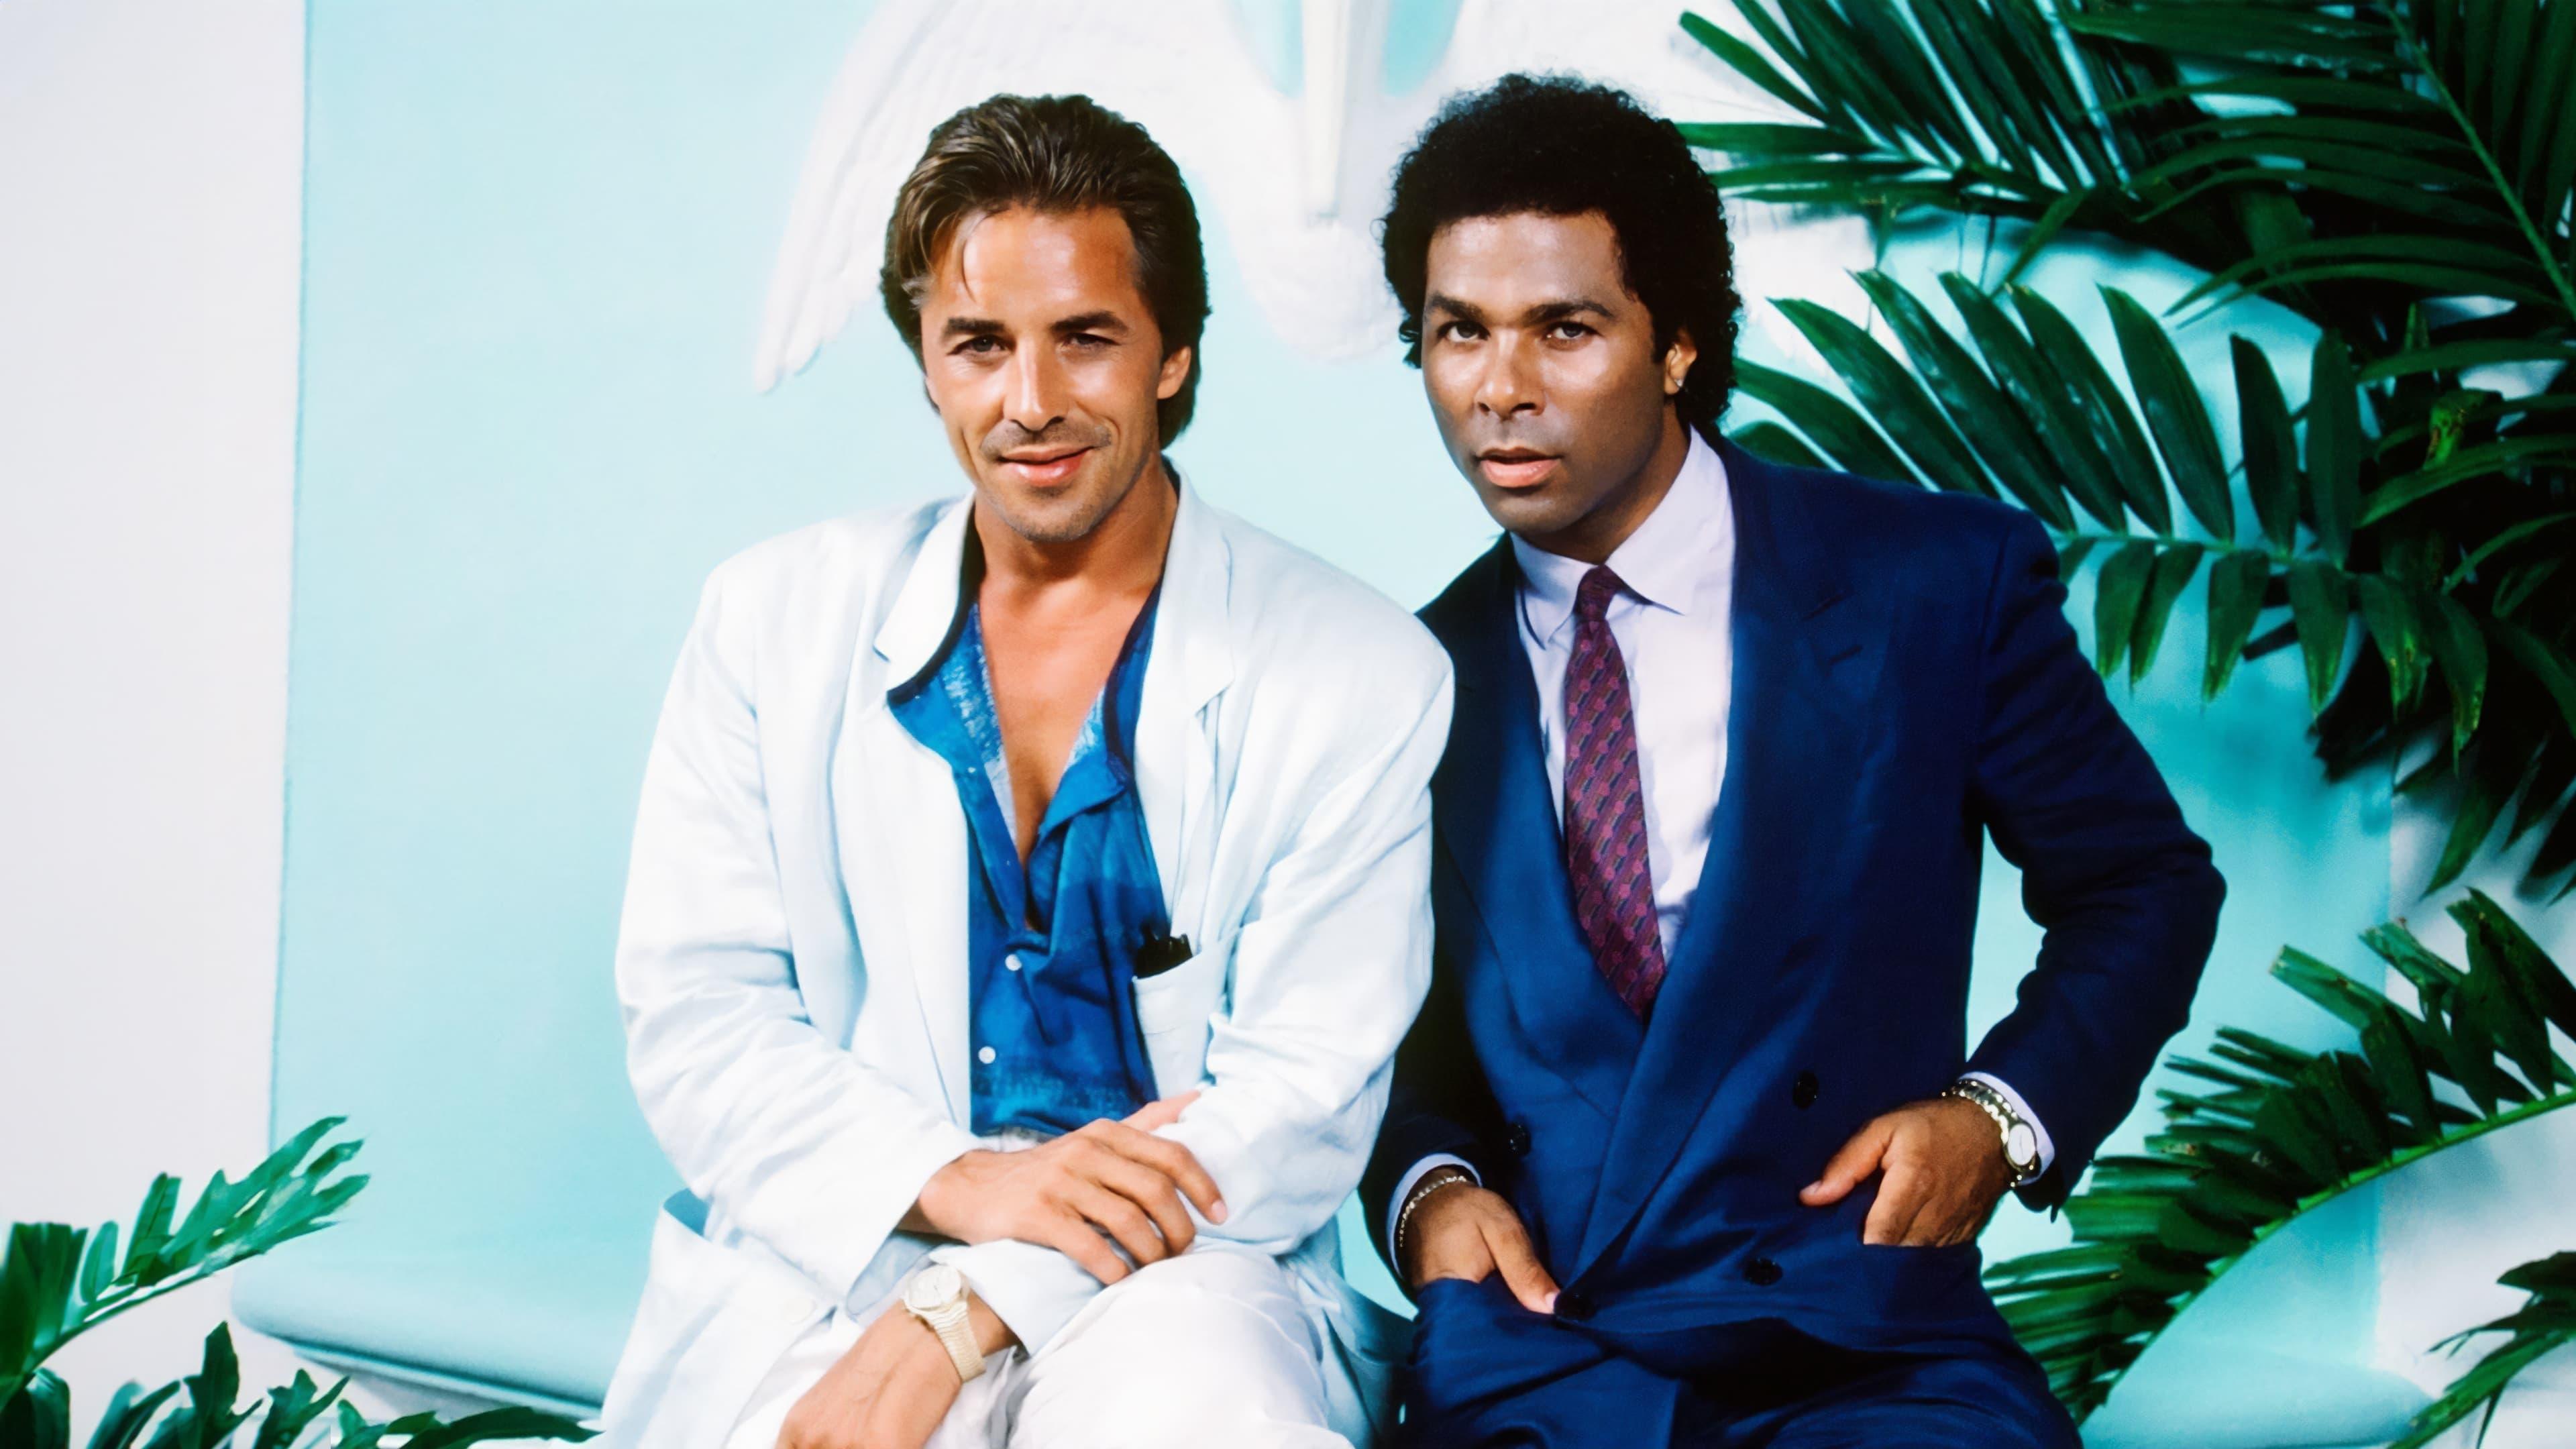 Miami Vice backdrop